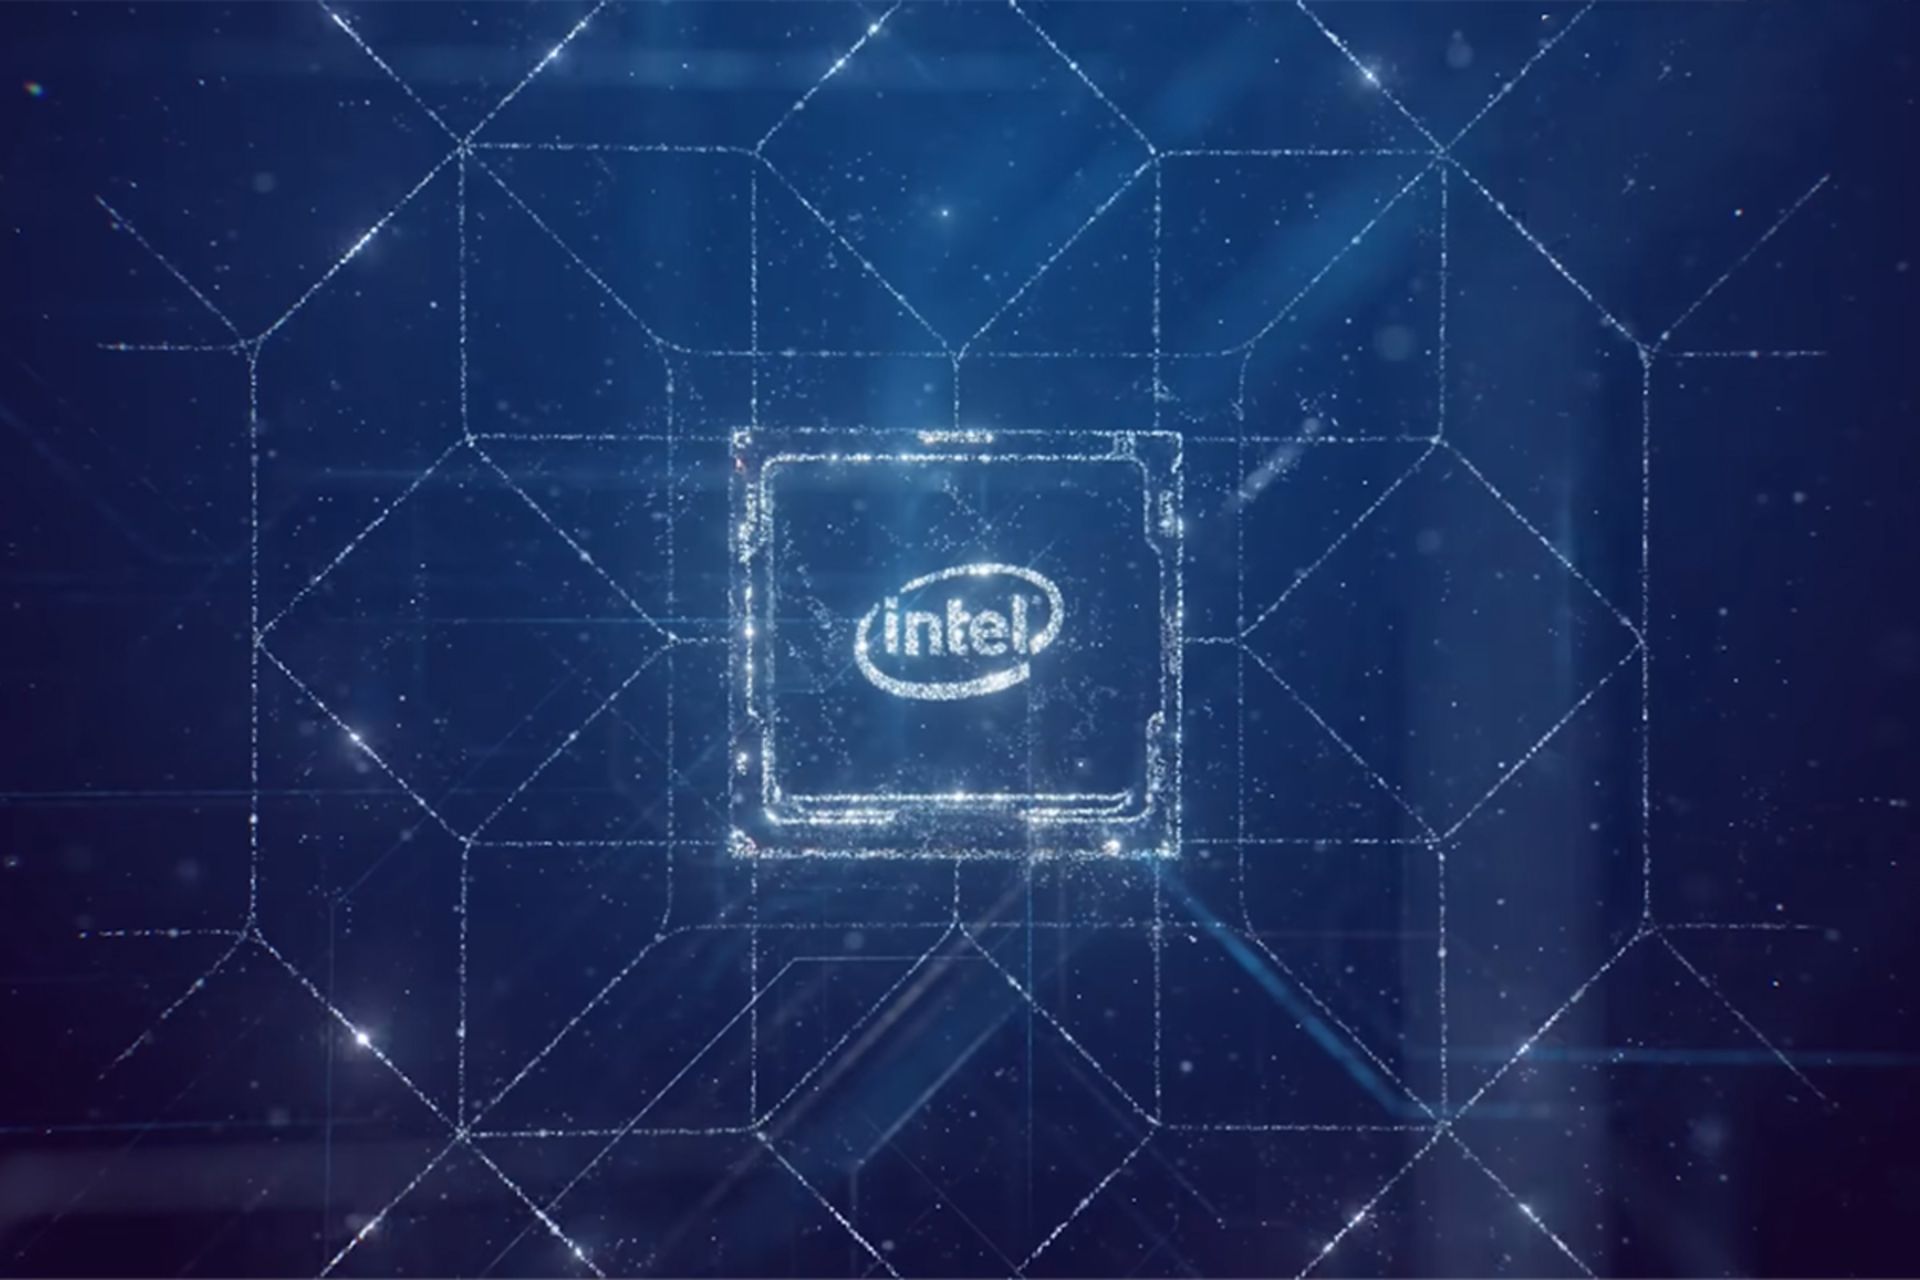 اینتل / Intel لوگو گرافیکی پس زمینه آبی